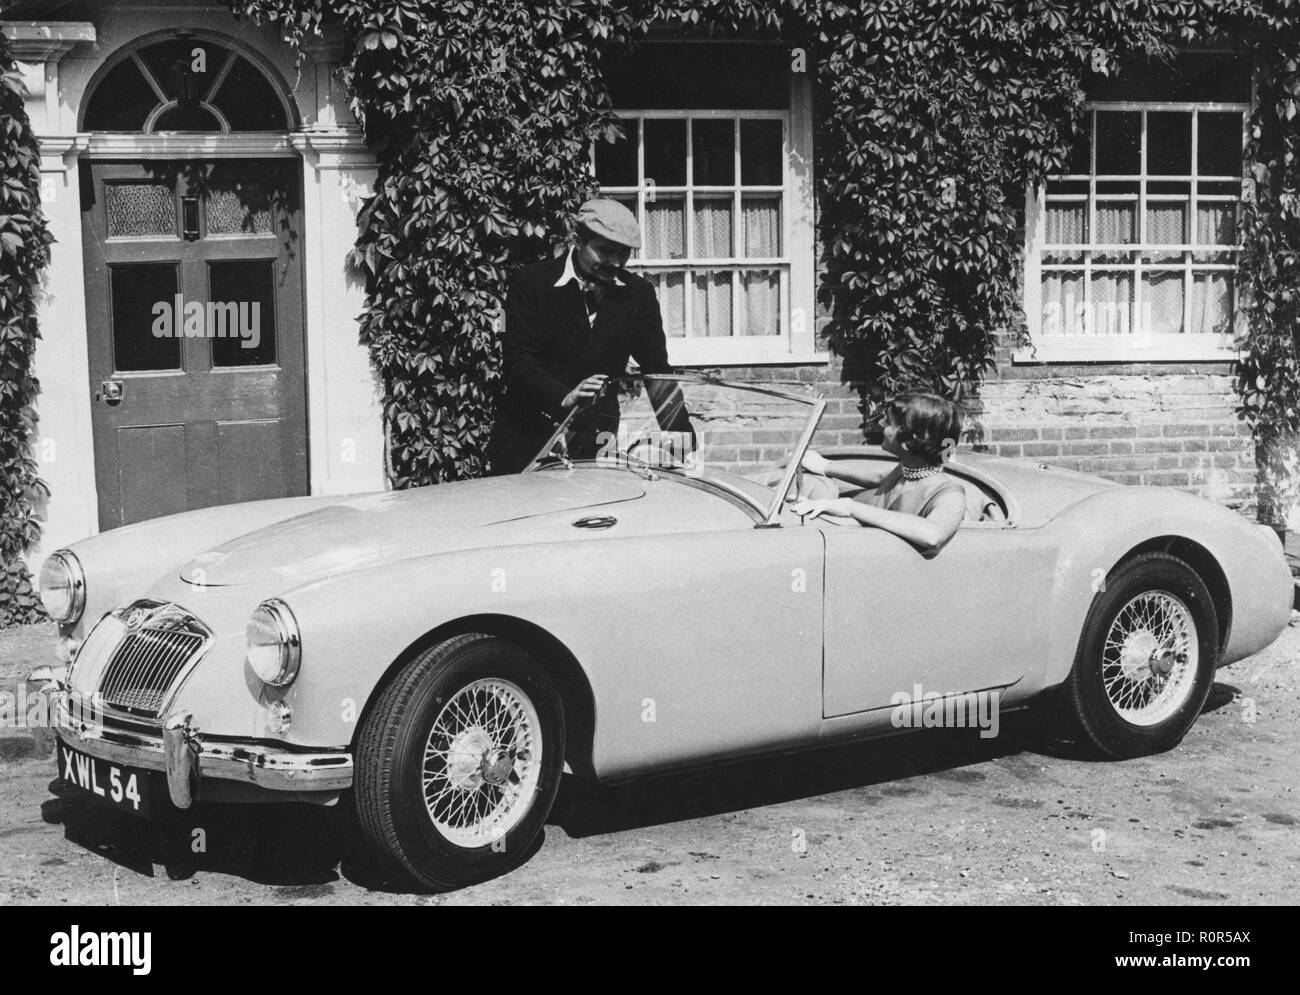 MG dans les années 1950. Le constructeur automobile britannique MG lance son nouveau modèle sport MGA. La voiture dispose d'un quatre-cylindre moteur. Un jeune couple pose avec la voiture dans un environnement typique. Banque D'Images